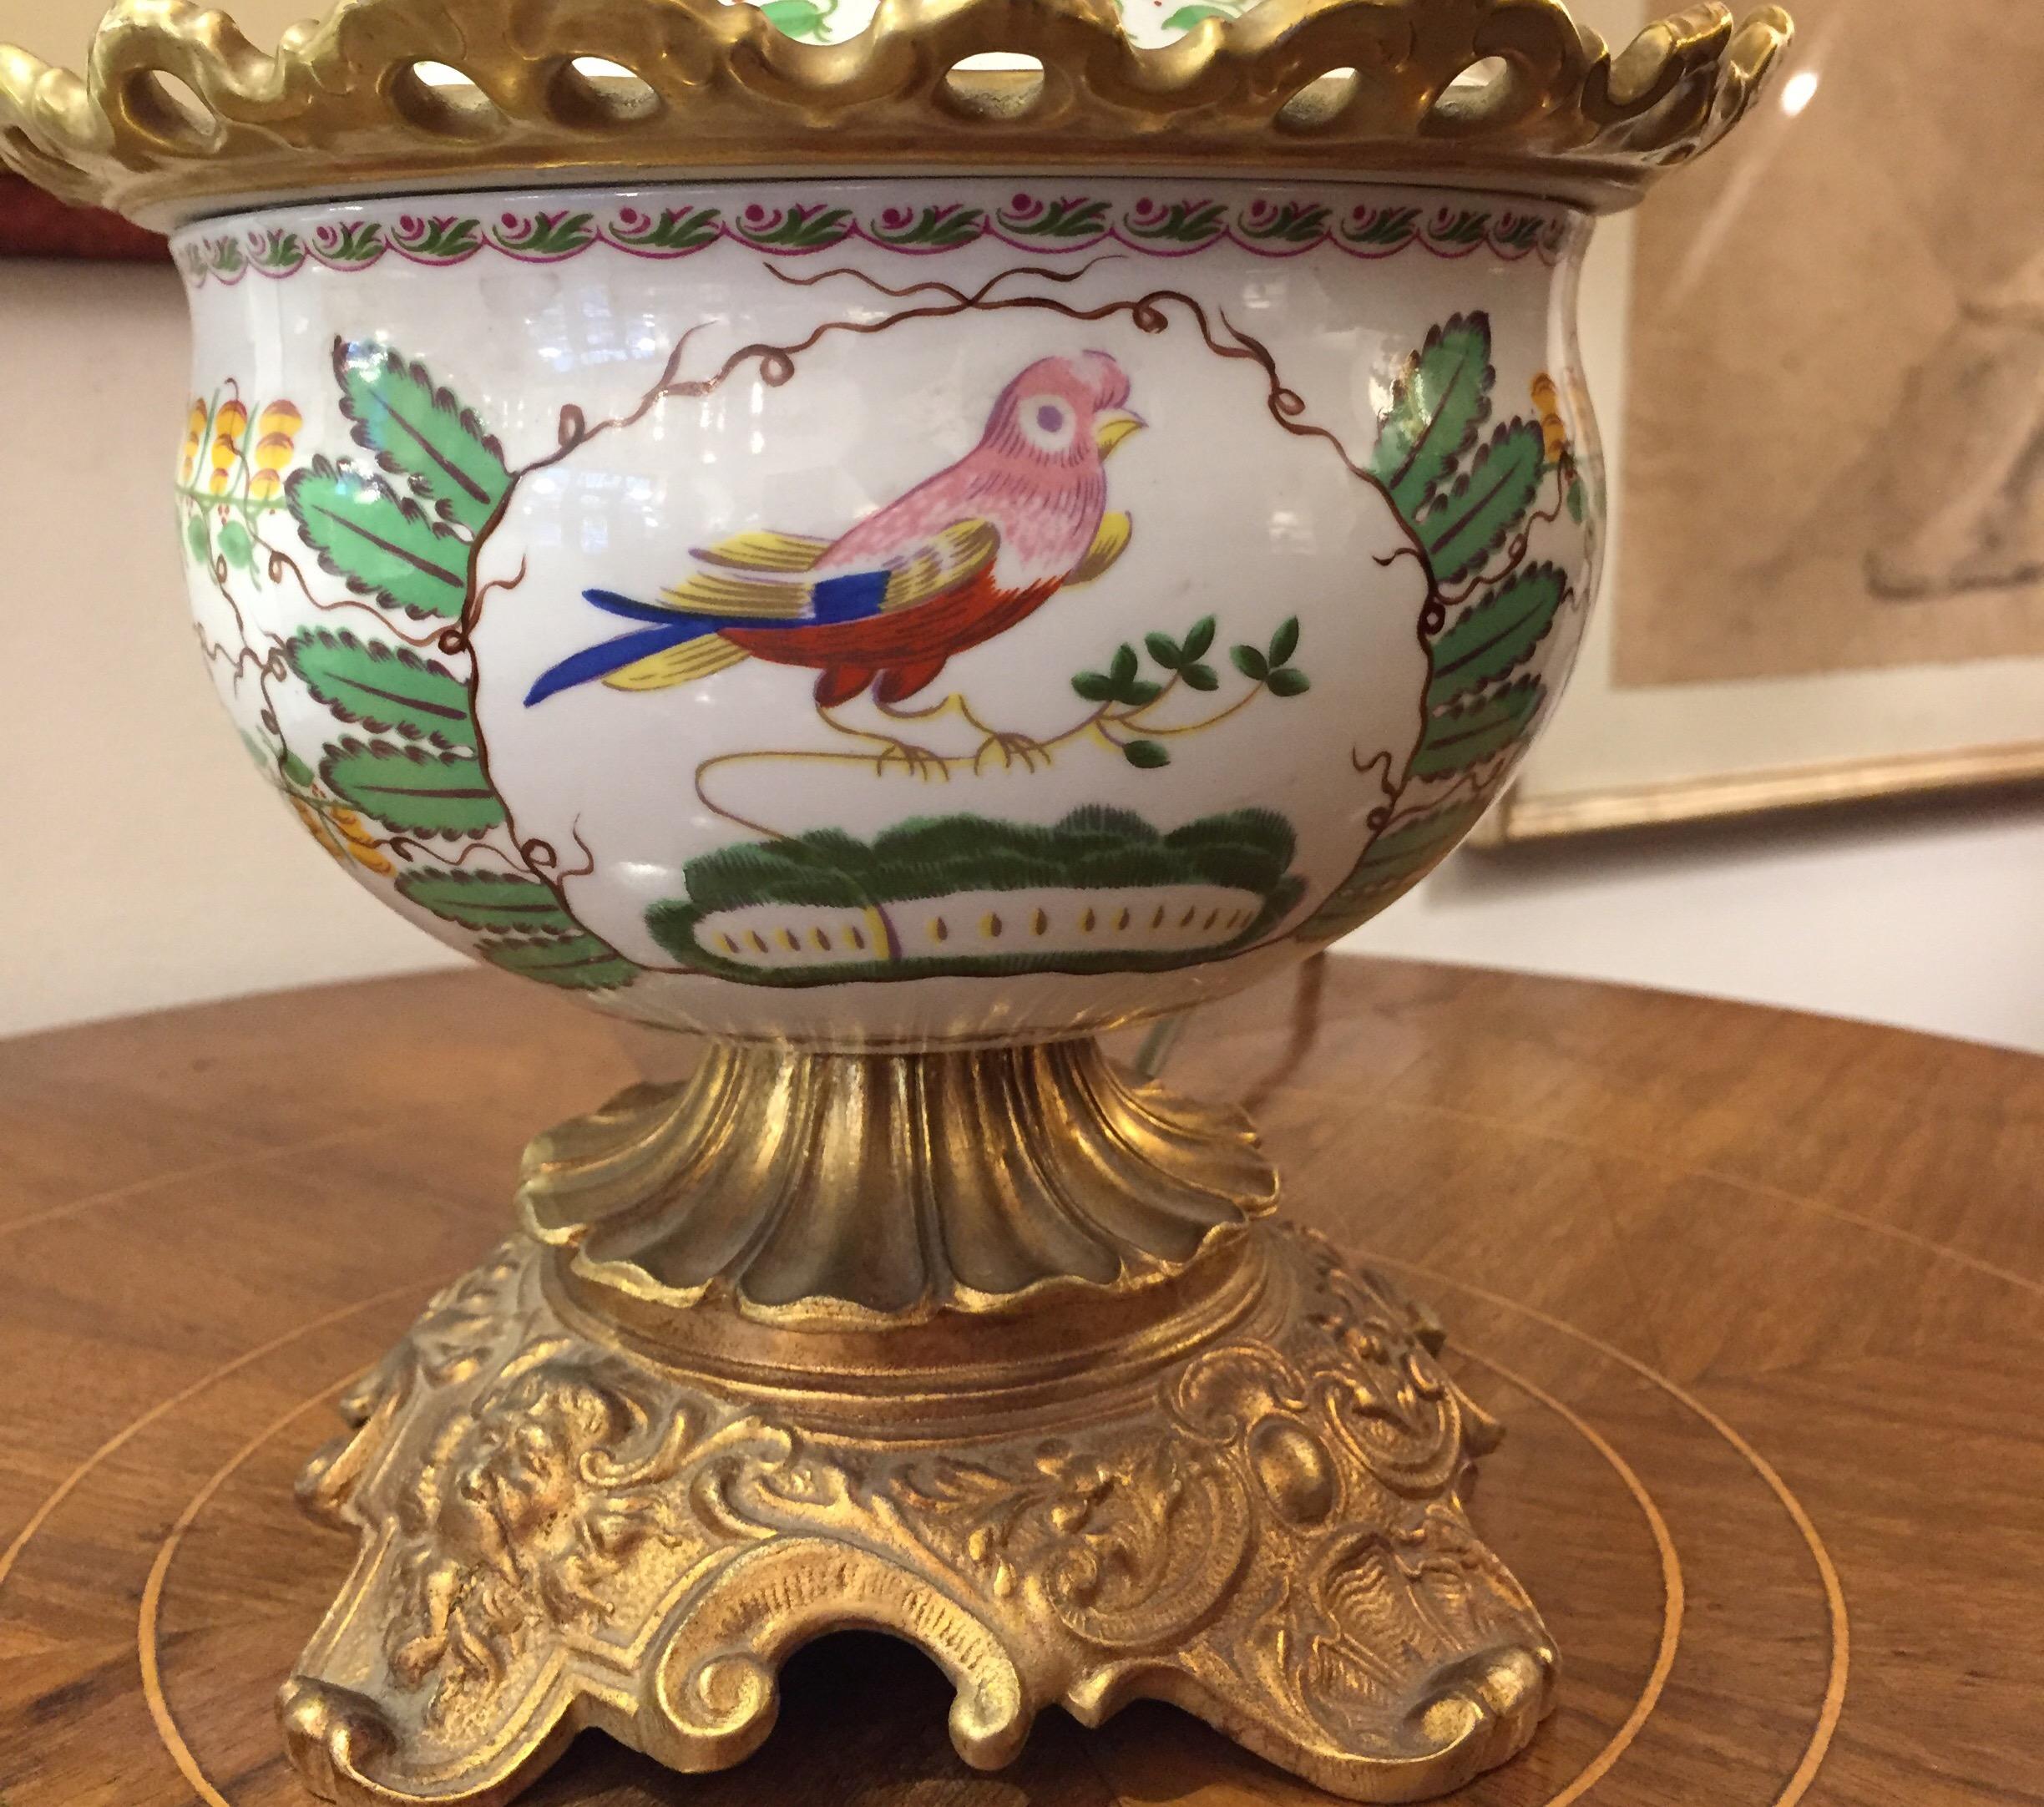 Lampe de table Mangani Firenze en porcelaine et bronze doré, vers 1970, une lampe à huile circulaire en porcelaine montée sur un socle en bronze doré, un vase en porcelaine avec un décor polychrome tout autour représentant des oiseaux et un